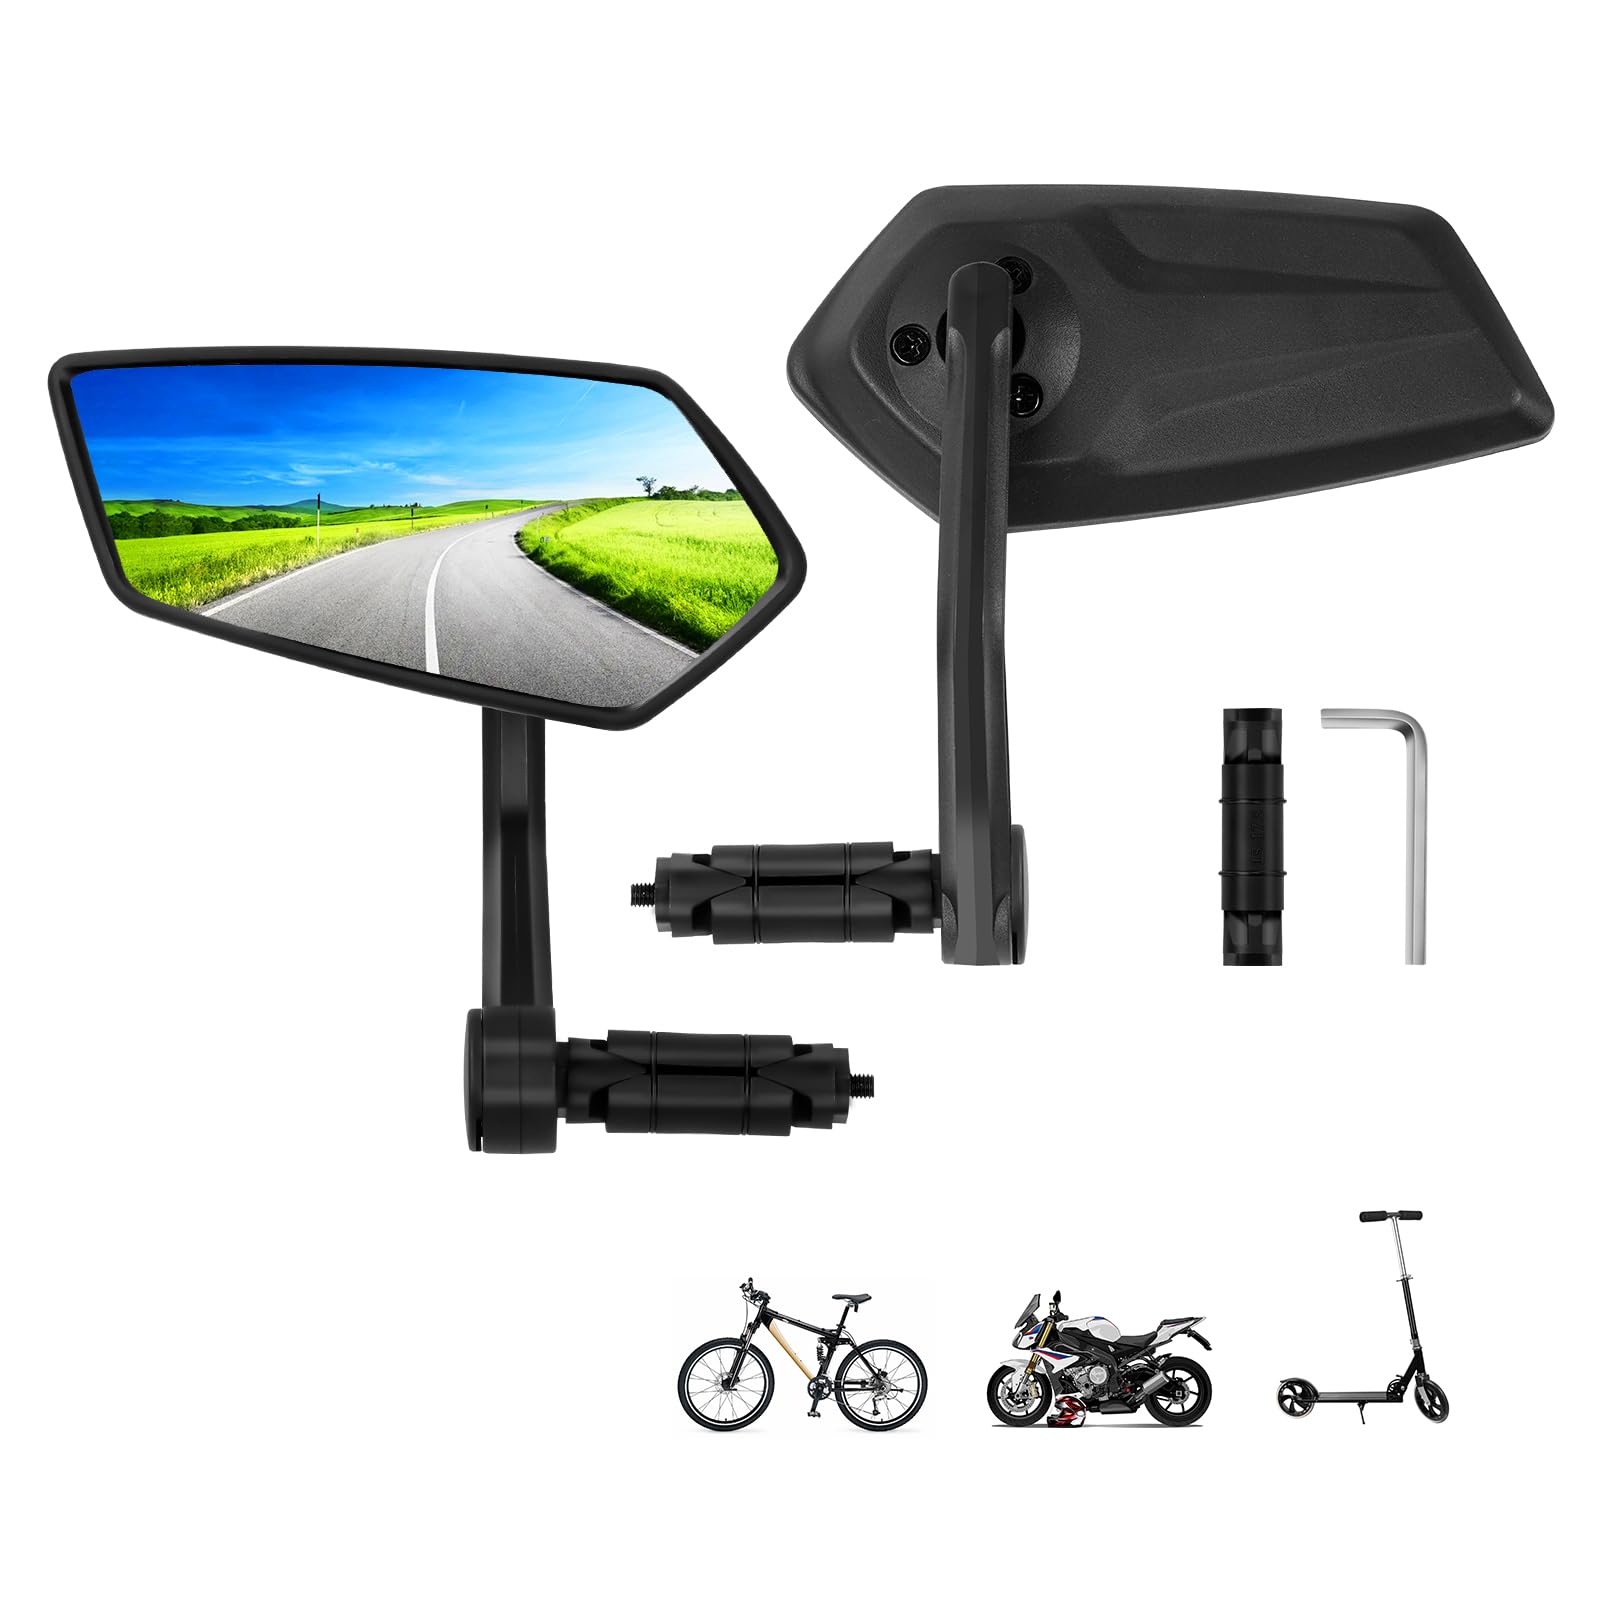 Fahrradspiegel für E-Bike Links, Fahrradspiegel für Lenker, Fahradspiegel Lenker Links Ebike, HD Schlagfestes Echtglas Spiegelfläche, für E-Bike Universal 15-20mm (Links + Rechts Lenkerende) von LURICO